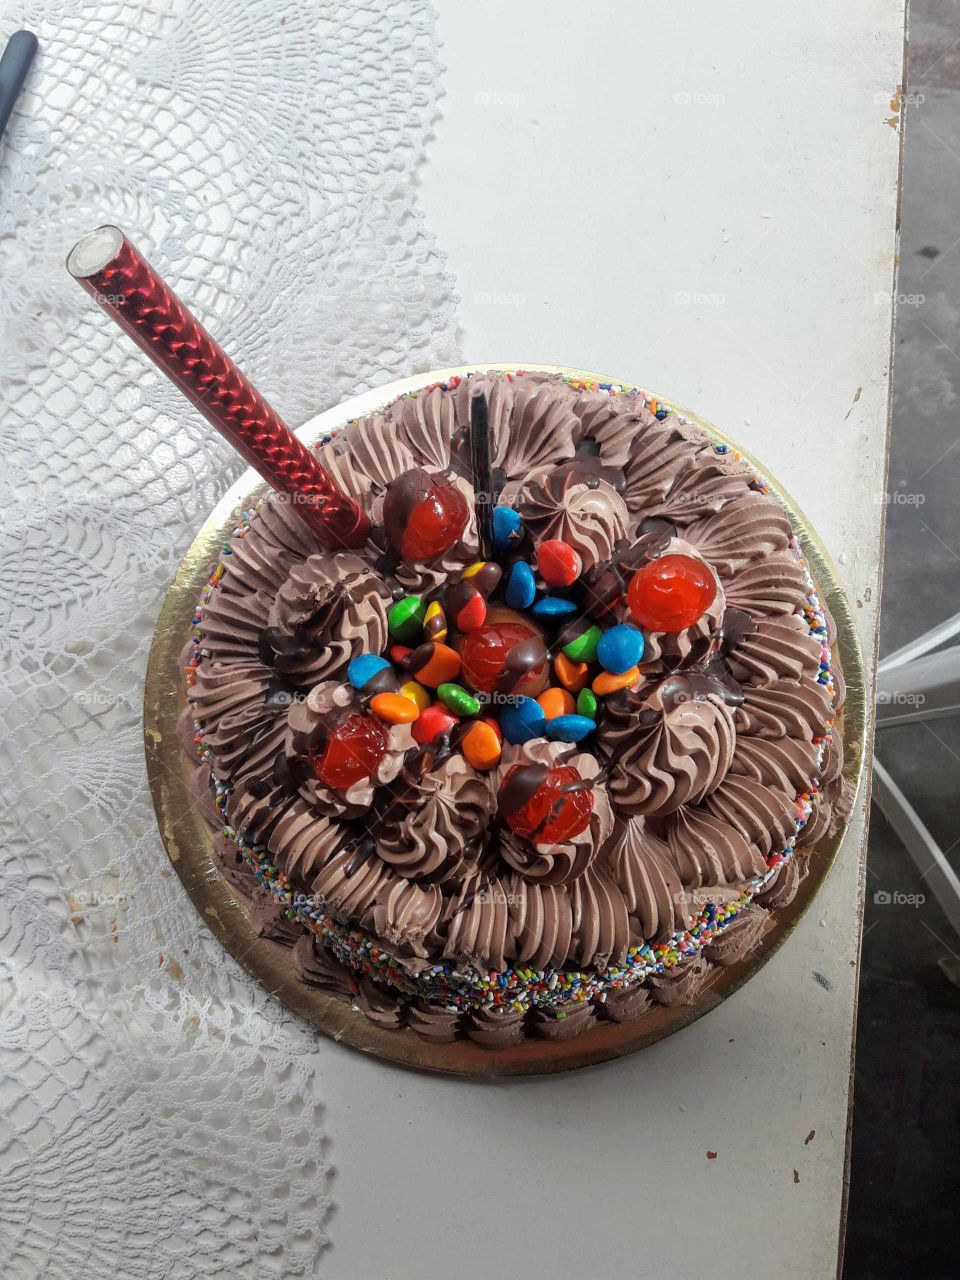 No

Chocolate birthday cake